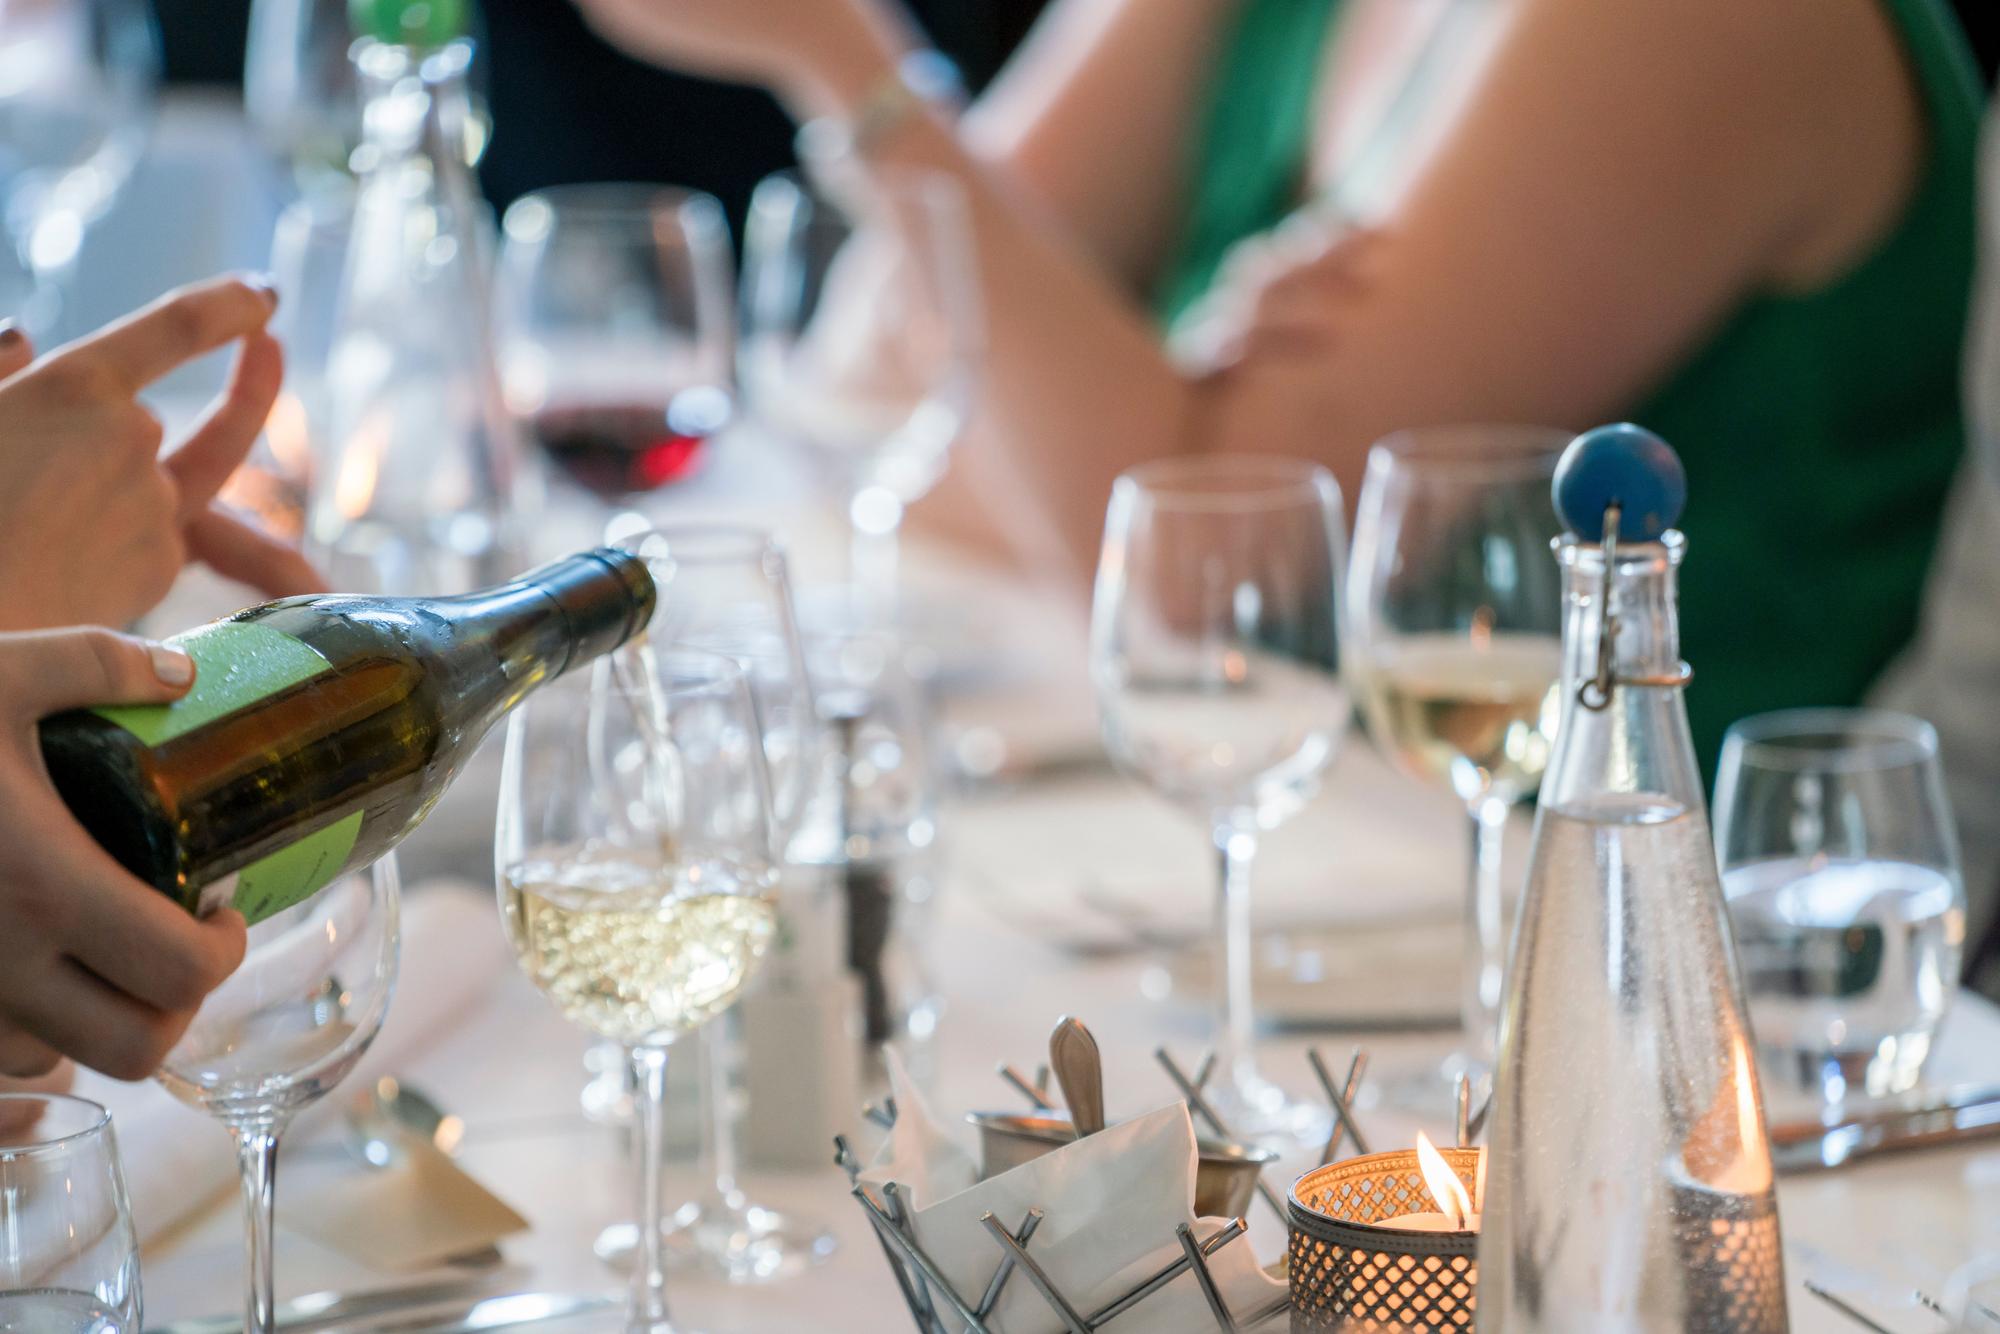 Un camarero sirve un vino durante una comida